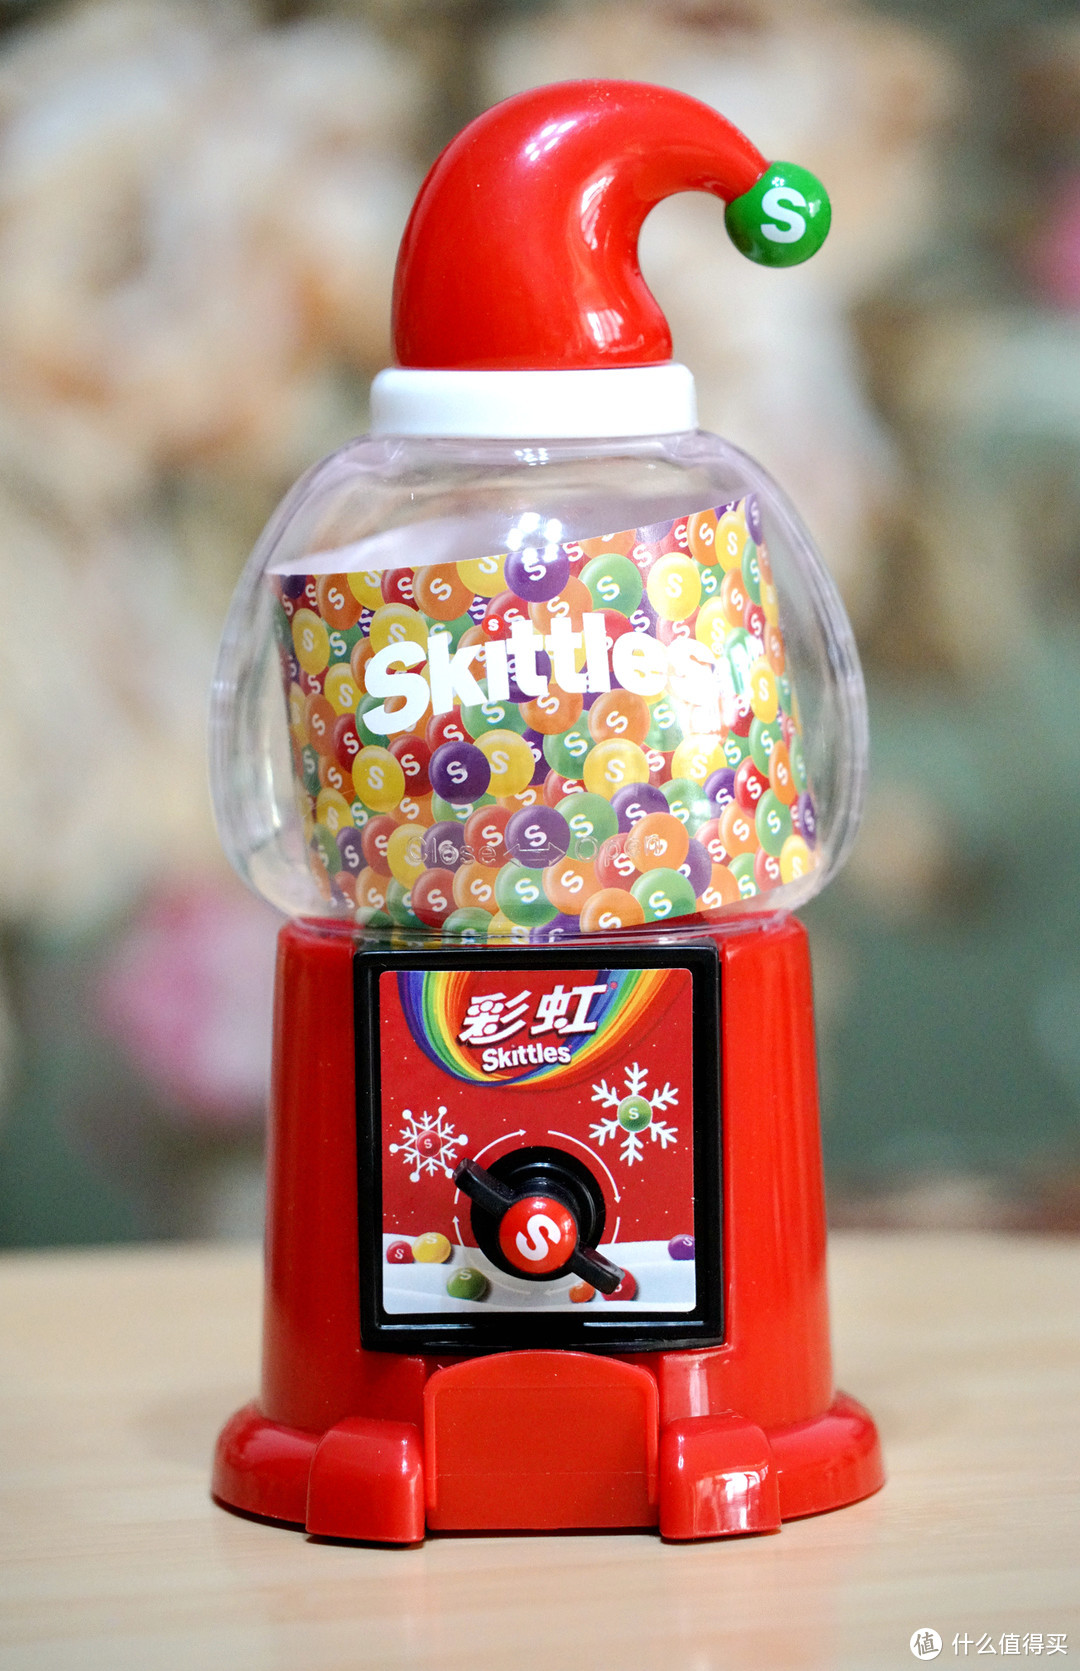 #设计之美#圣诞节快乐！可曾记得我们曾经有过彩虹糖的梦？